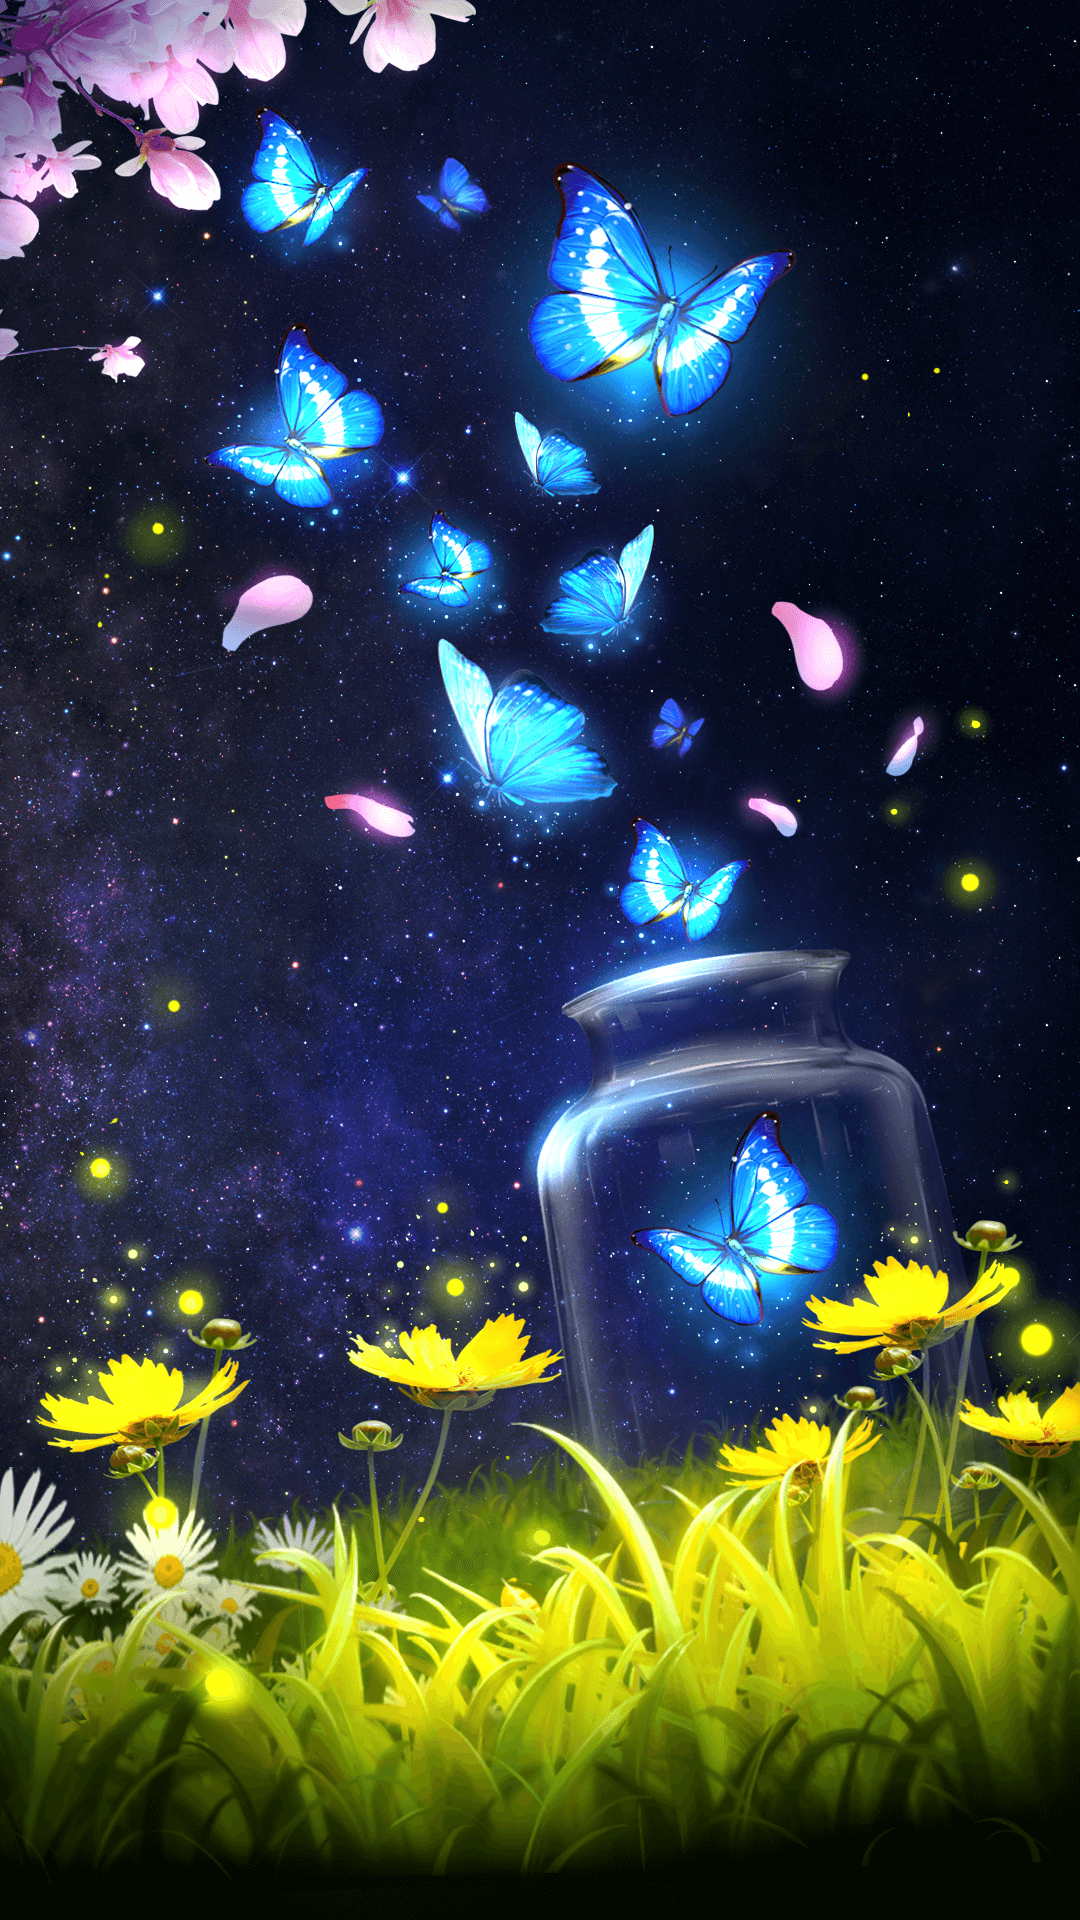 Blue Robot & Butterflies Live Wallpaper - free download